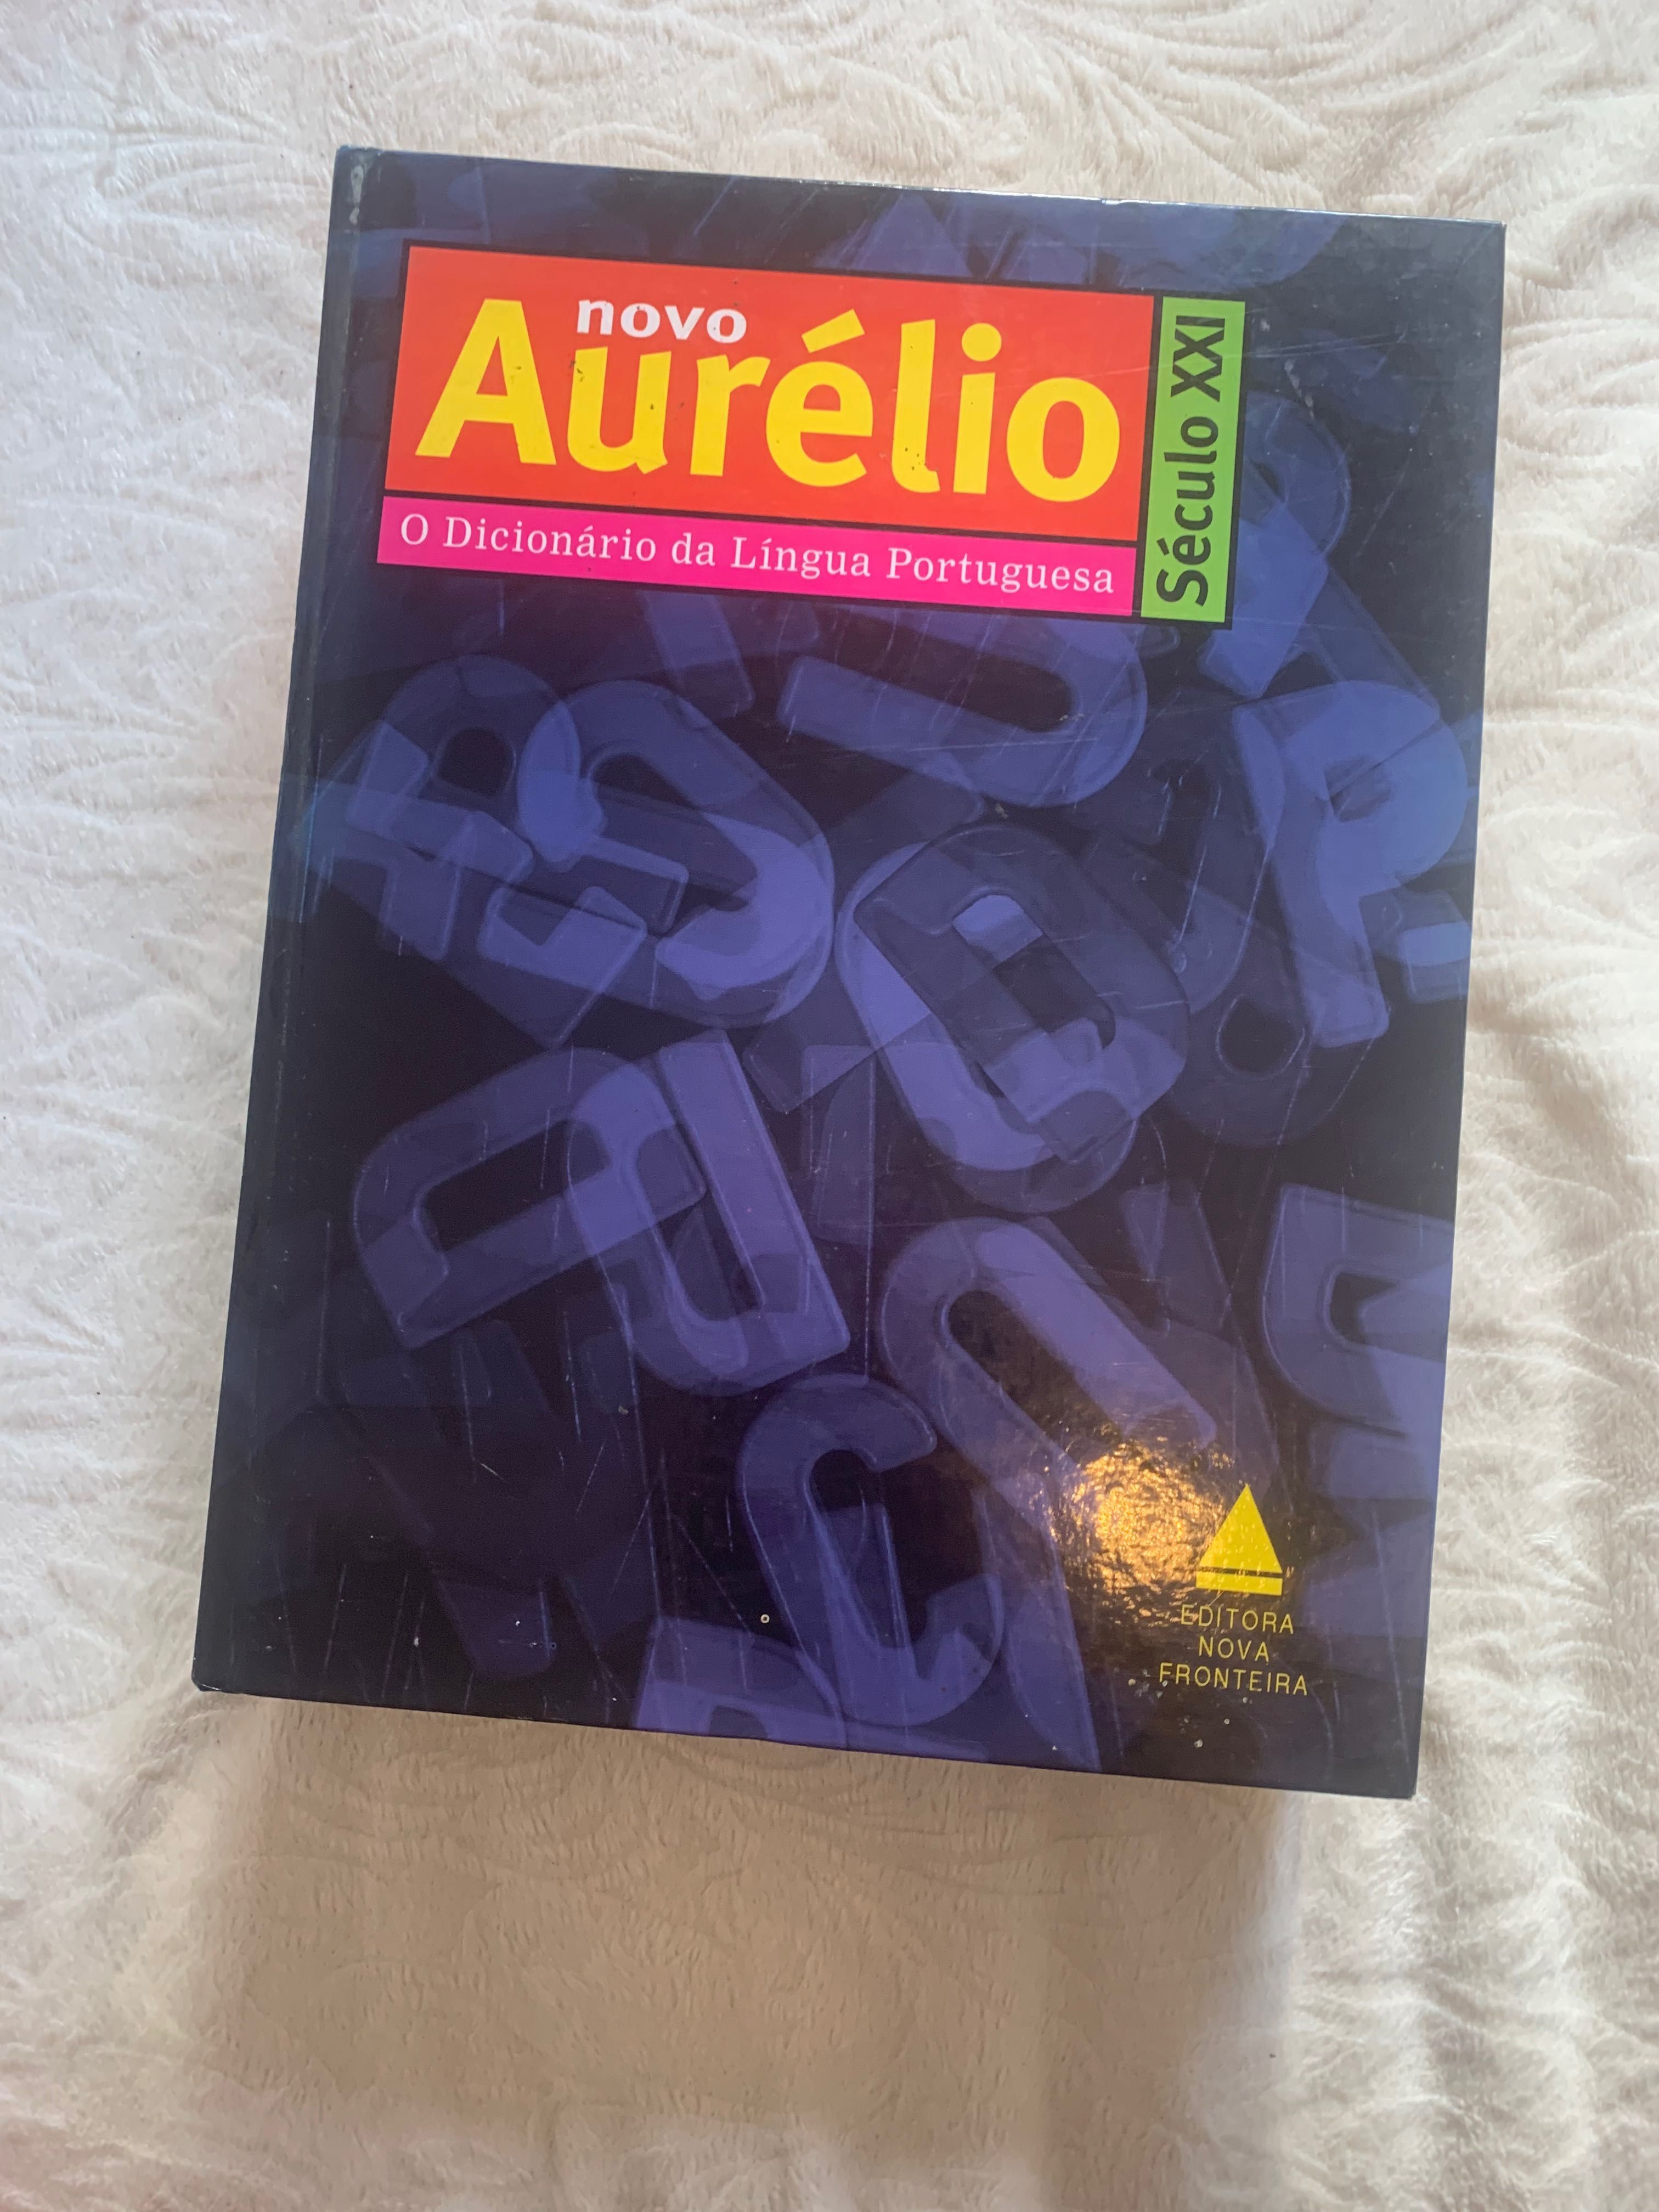 Dicionário Aurélio